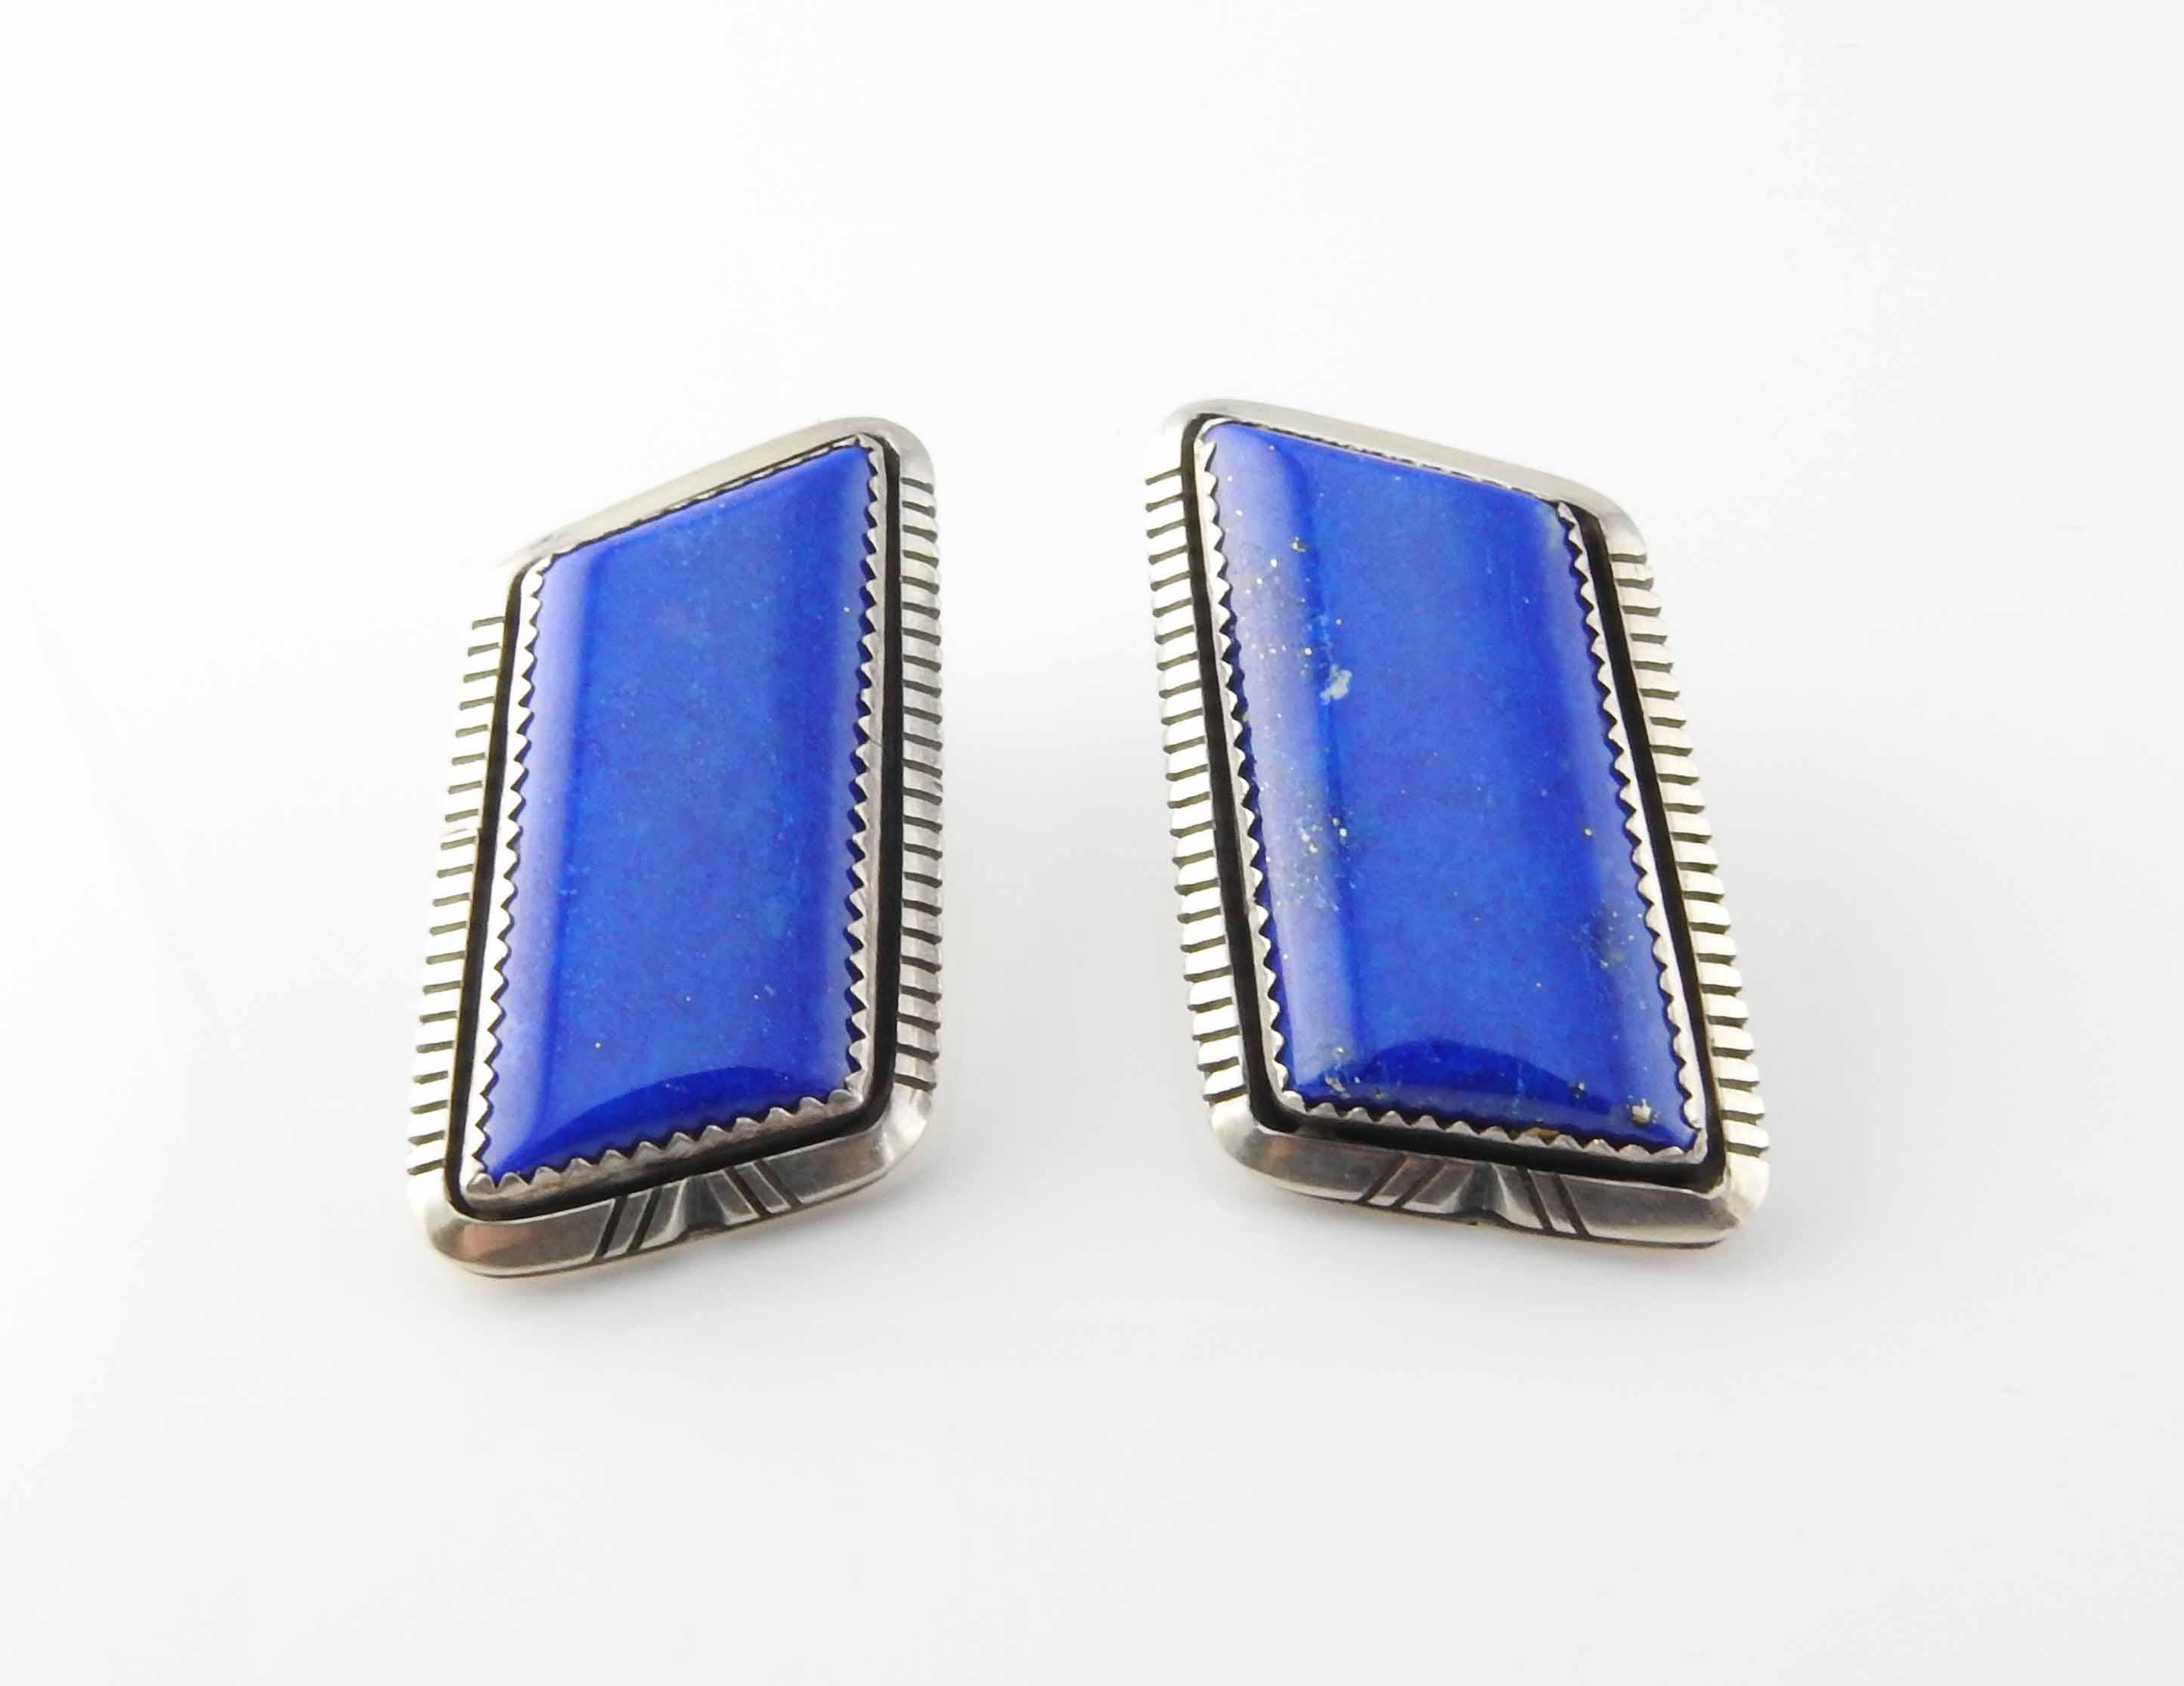 Native American W. G. Johnson Lapis Lazuli Parallelogram Earrings.

Marked: W. G. Johnson, Sterling
Backs: Sterling

Measures: 1 1/4